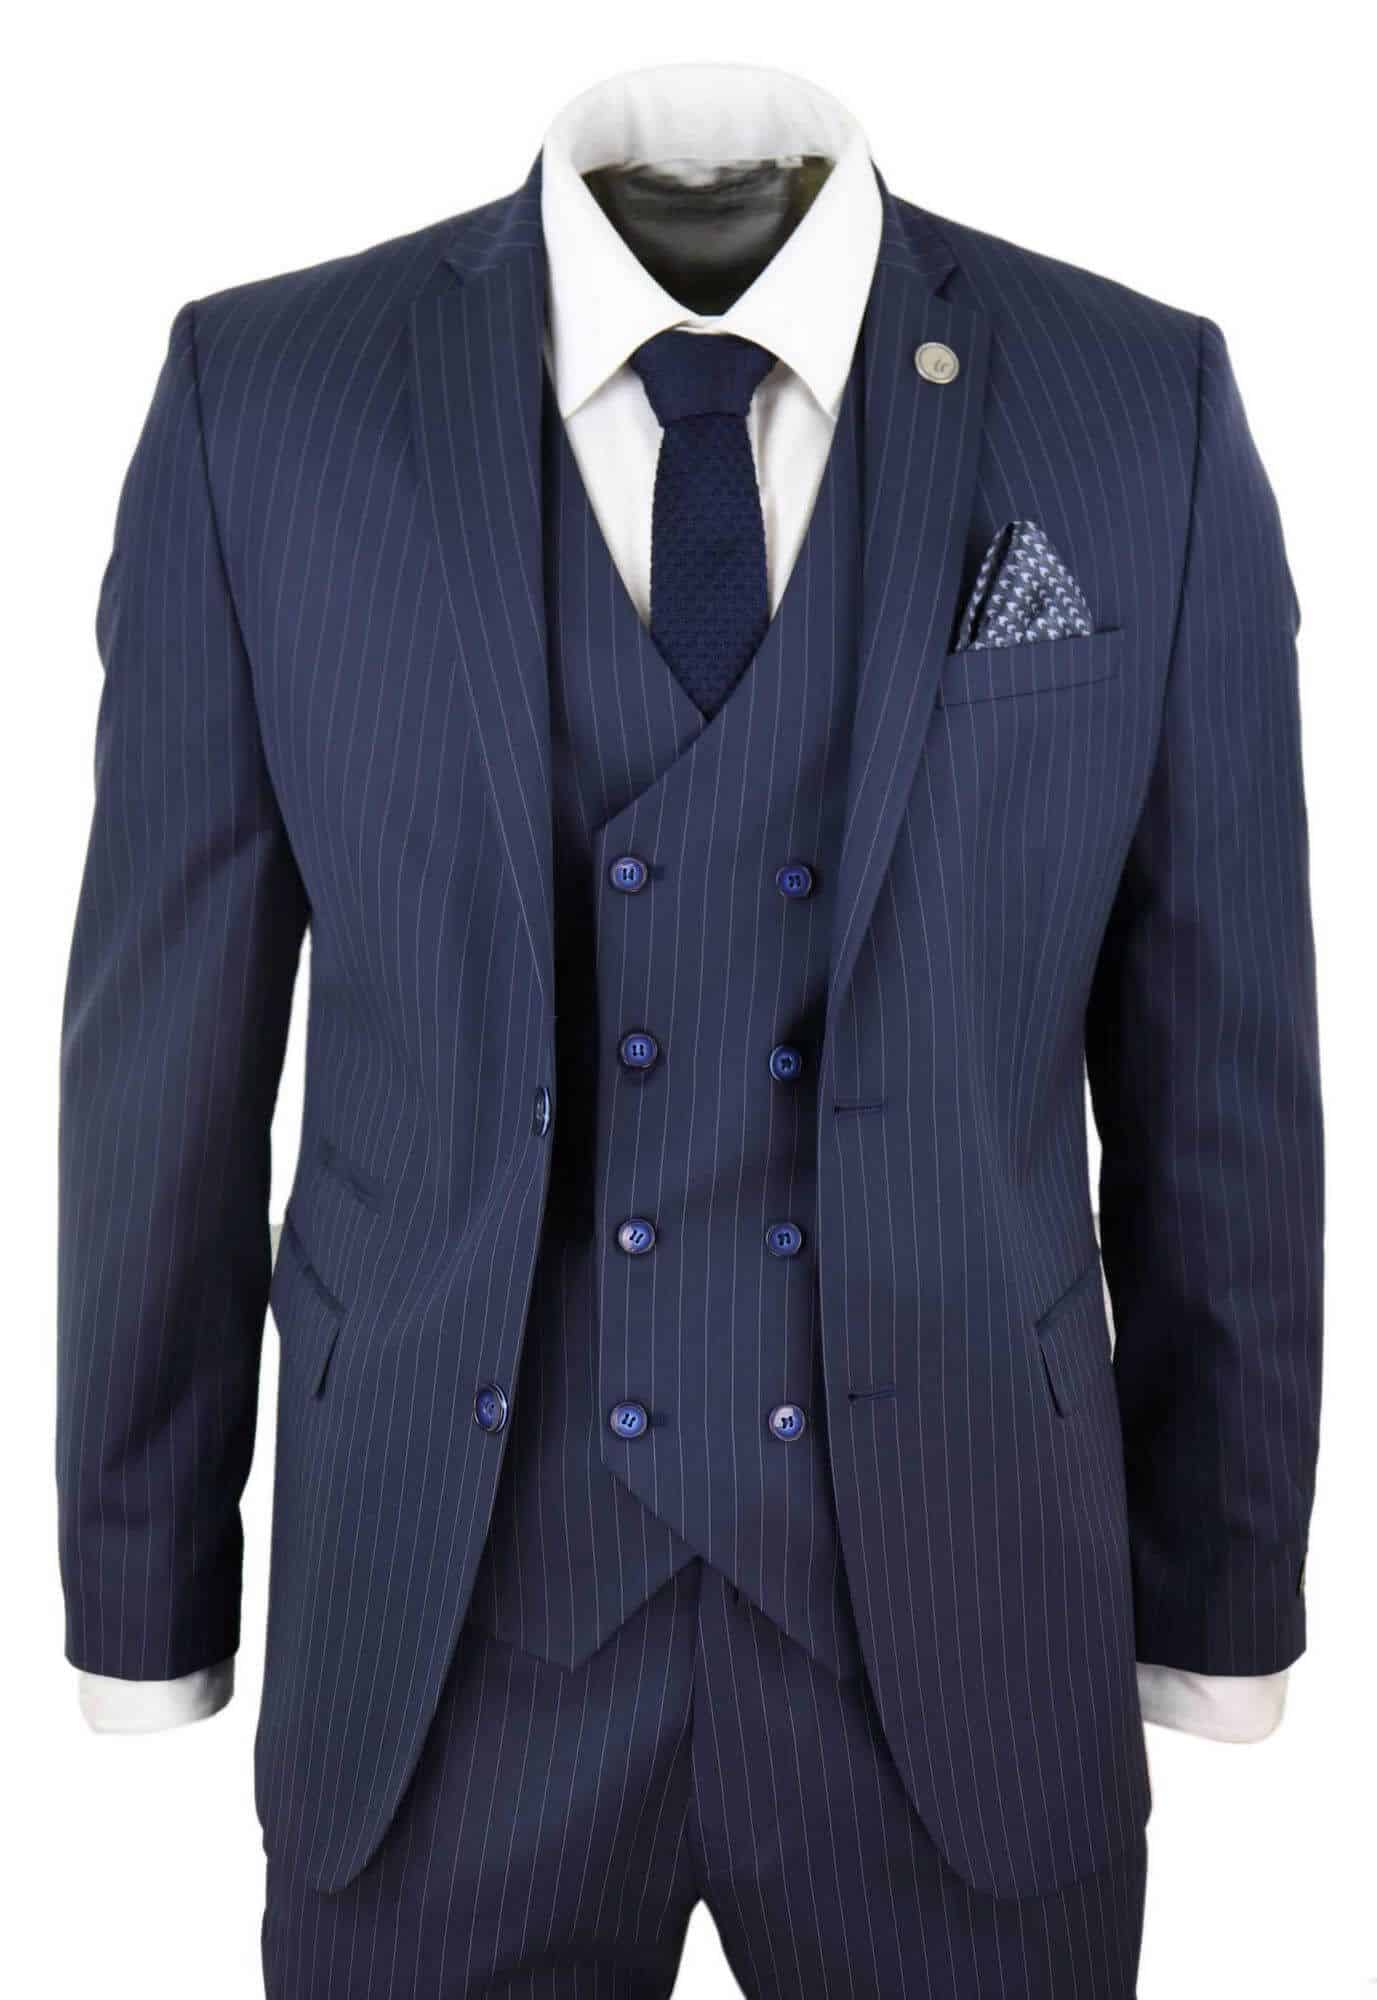 https://happygentleman.com/wp-content/uploads/2019/11/mens-3-piece-pinstripe-navy-blue-suit.jpg